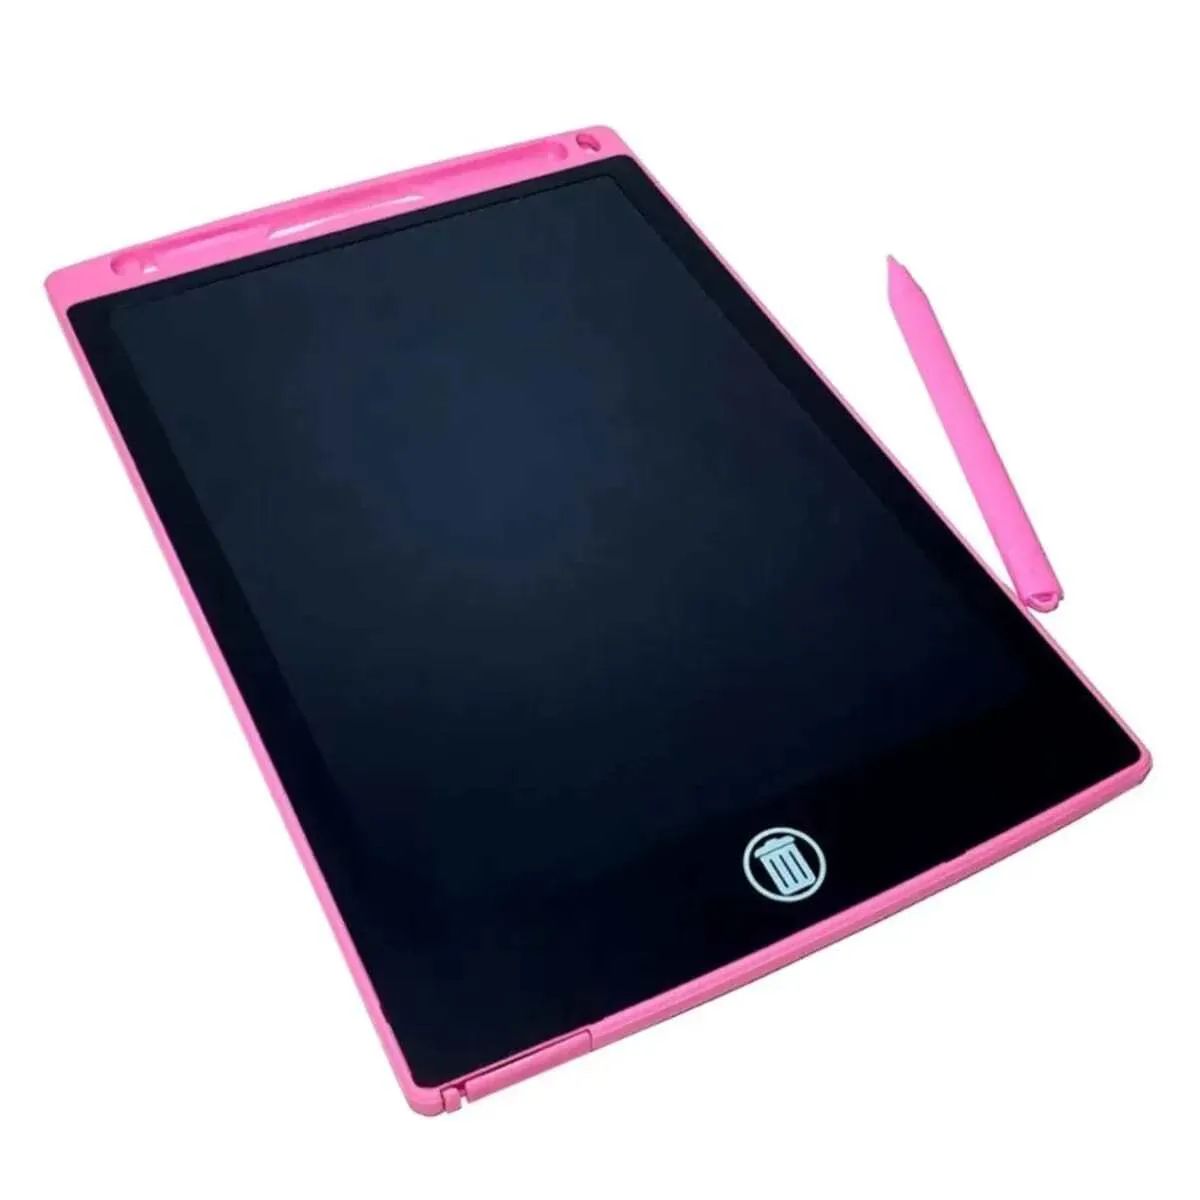 Графический планшет 8.5 LCD Writing Tablet Pink 00658 графический планшет для рисования wellywell с lcd экраном 8 5 розовый planshet pink